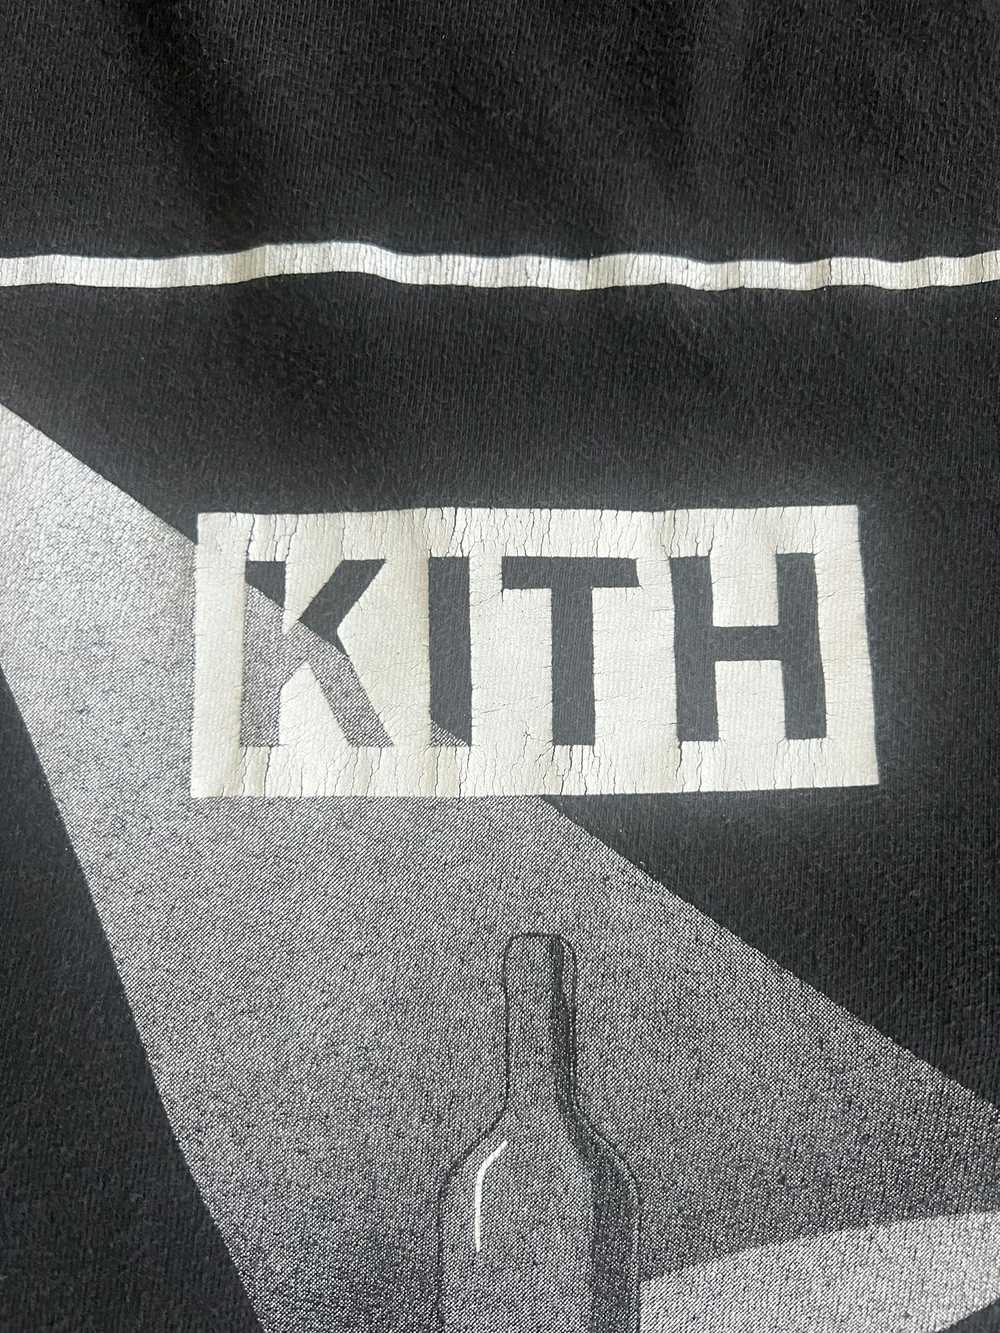 Kith × Vintage 1/1 Vintage 1993 Kith Life is a Ca… - image 5